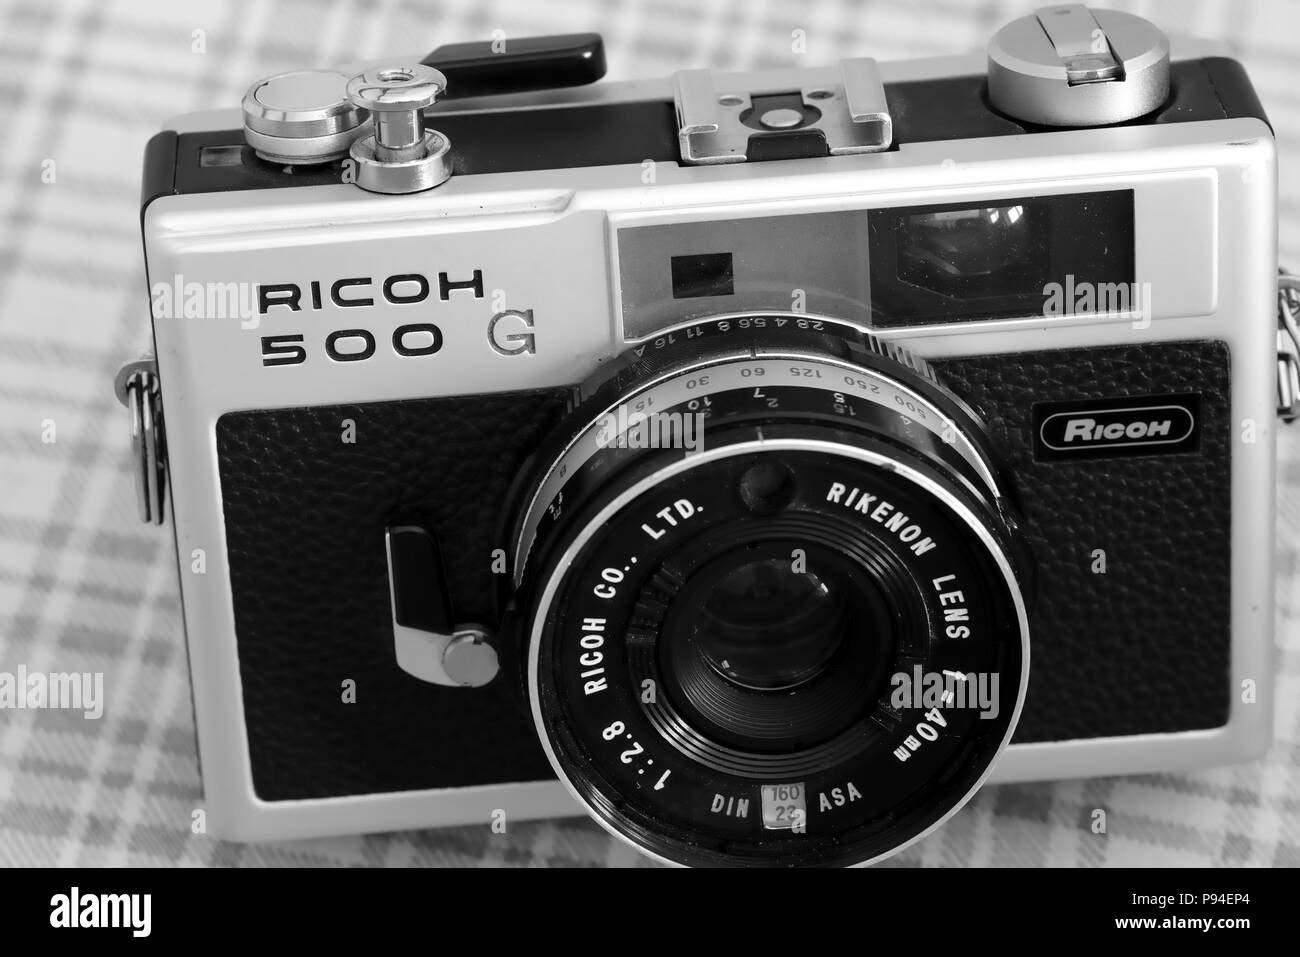 Ricoh Entfernungsmesser-Kamera mit Rikenon 40mm Objektiv. Die Ricoh 500 G ist eine kompakte gekoppelte Entfernungsmesser-Kamera, die 1972 von Ricoh eingeführt wurde Stockfoto